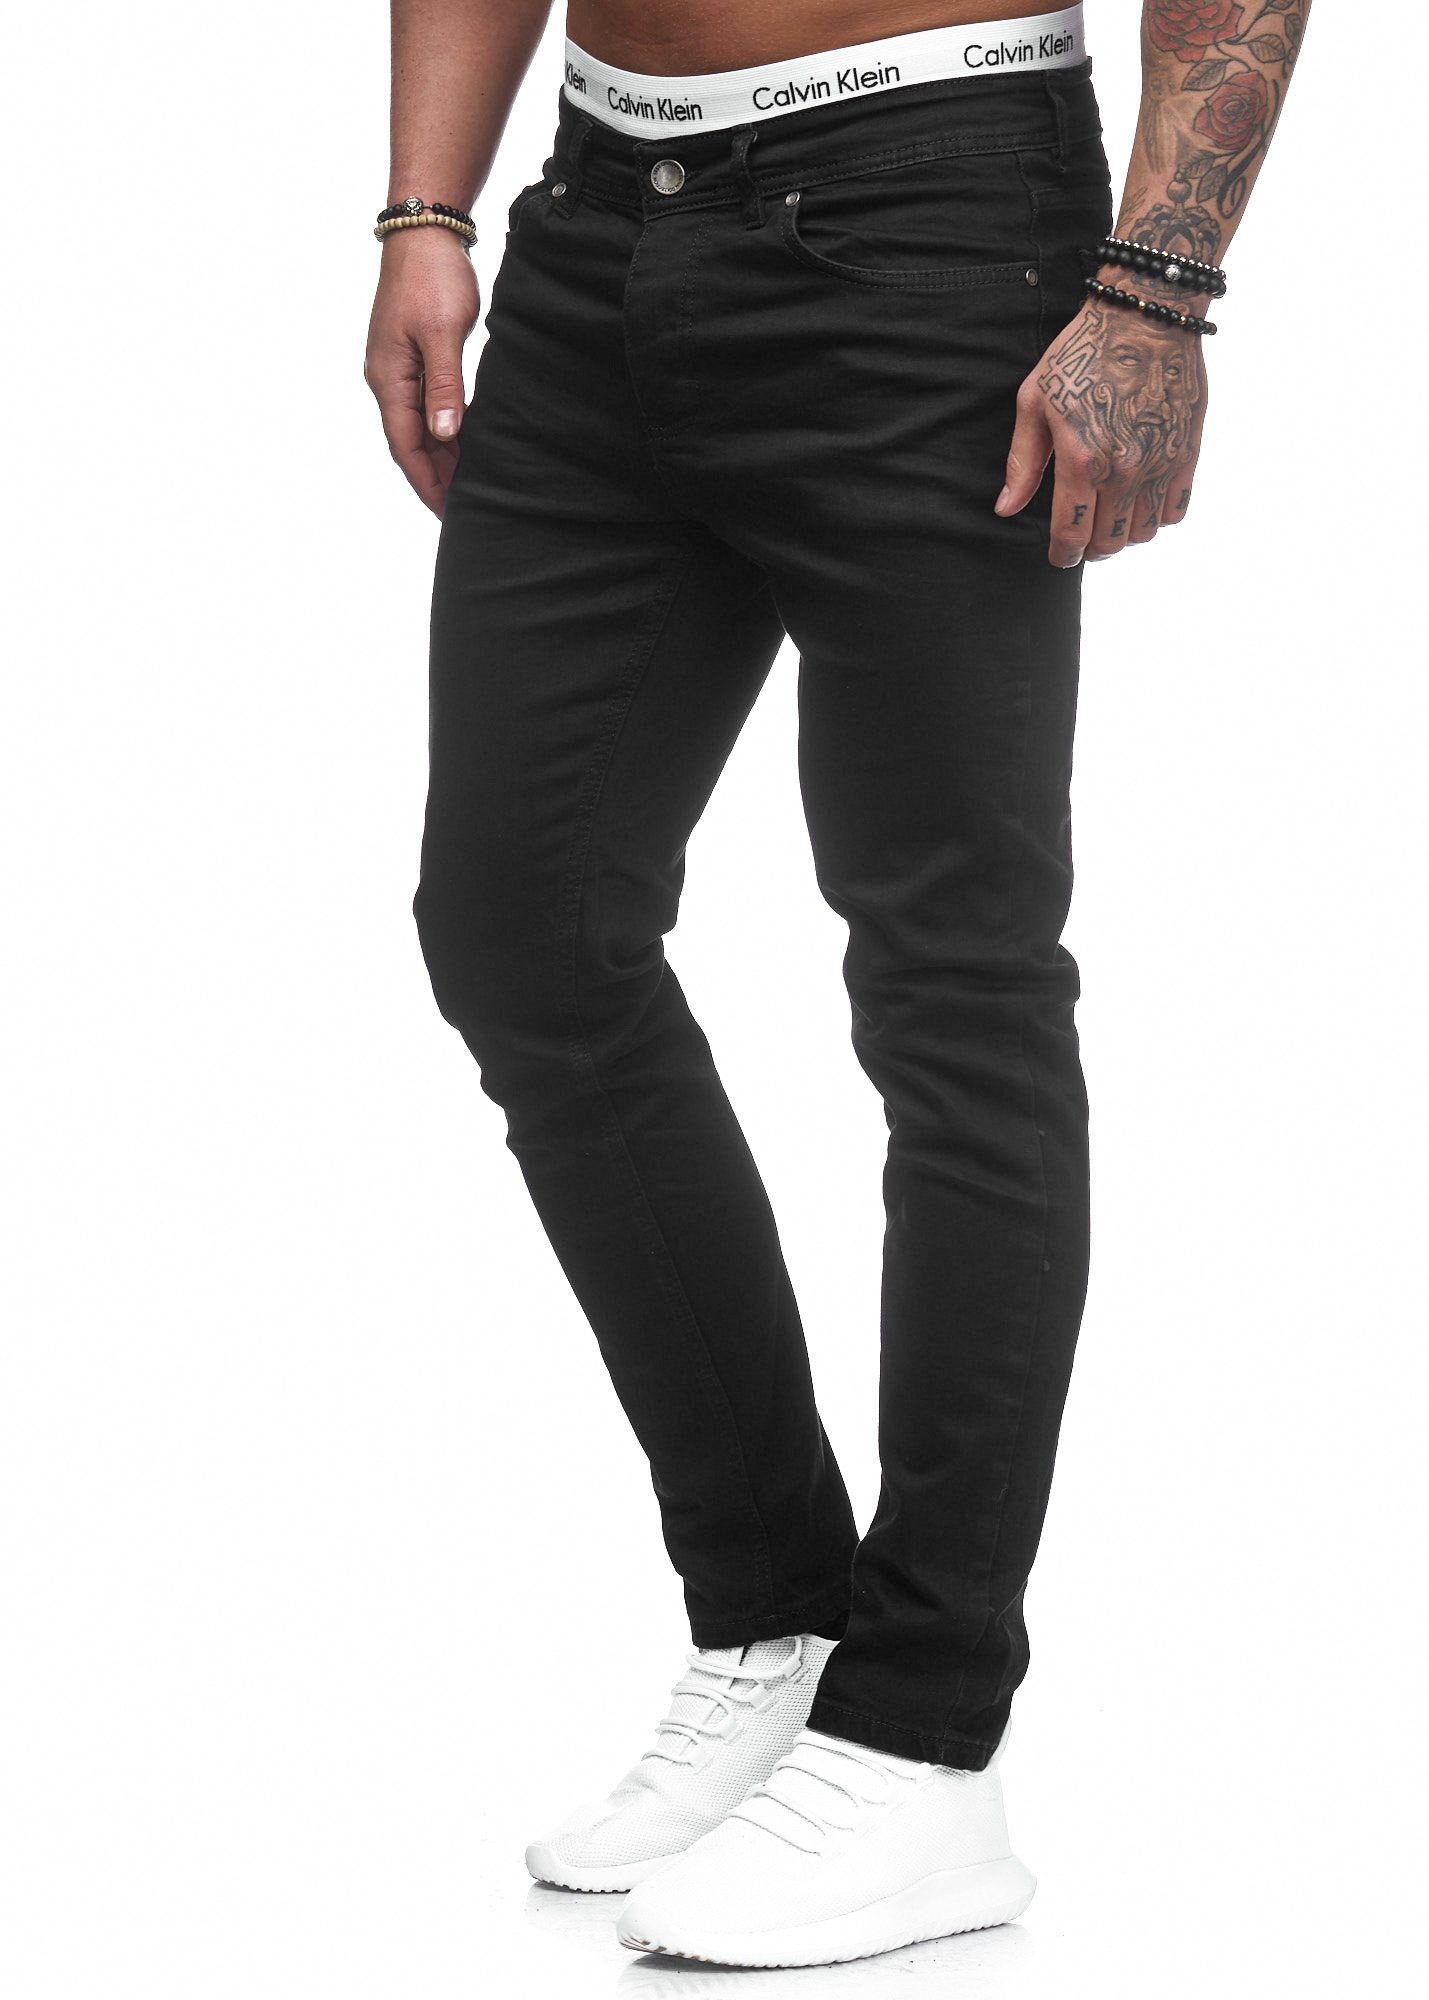 Jeans Hose Basic 5078 Fit Stretch Herren Schwarz Jeanshose Slim-fit-Jeans Designer Slim Chino Code47